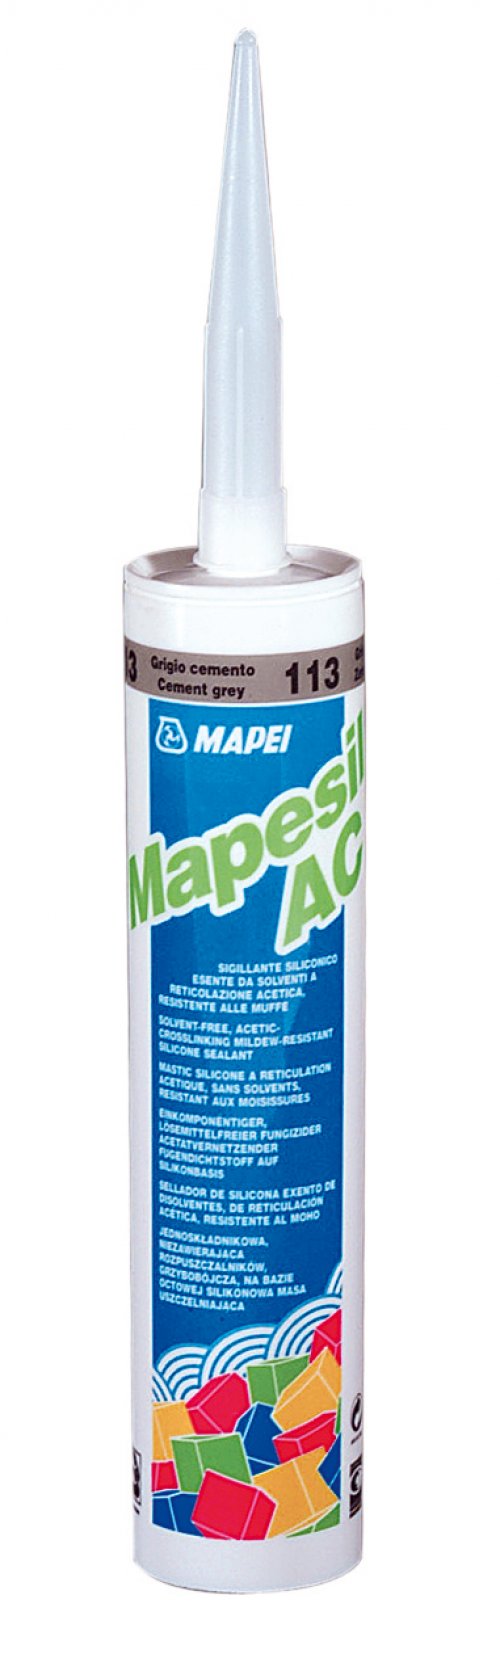 MAPESIL AC 113 Mapei spárovací těsnící hmota CEMENTOVĚ ŠEDÁ 310ml preview